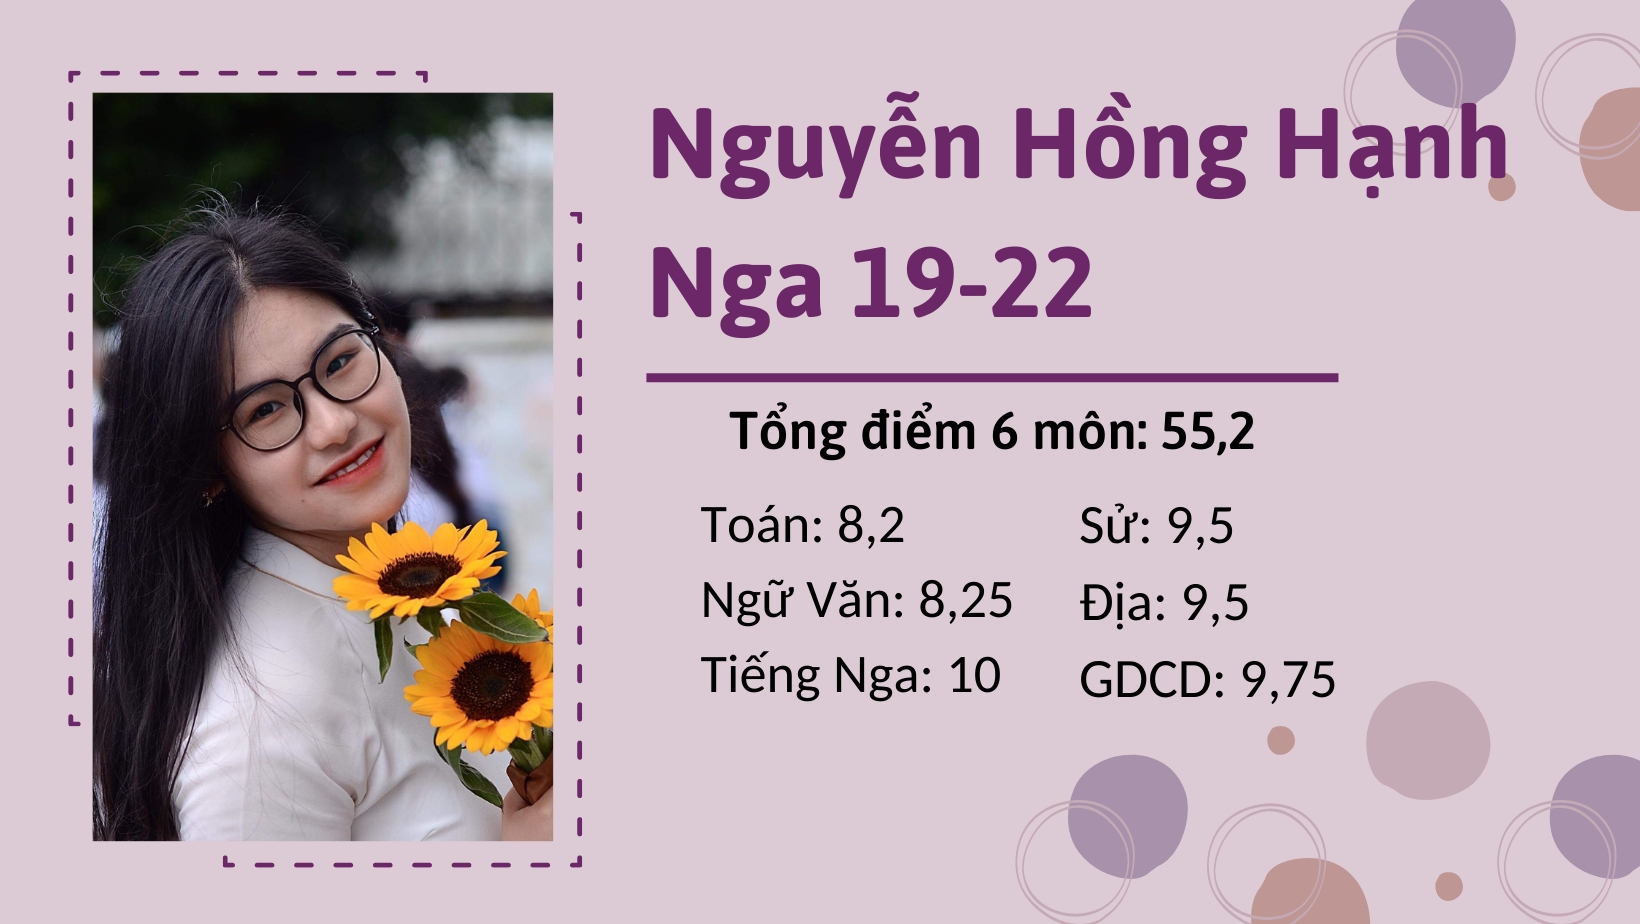 Điều gì đặc biệt ở cô nàng Nguyễn Hồng Hạnh (chuyên Nga 19-22) - Thủ khoa tổng điểm 6 môn của Chuyên Nguyễn Trãi?